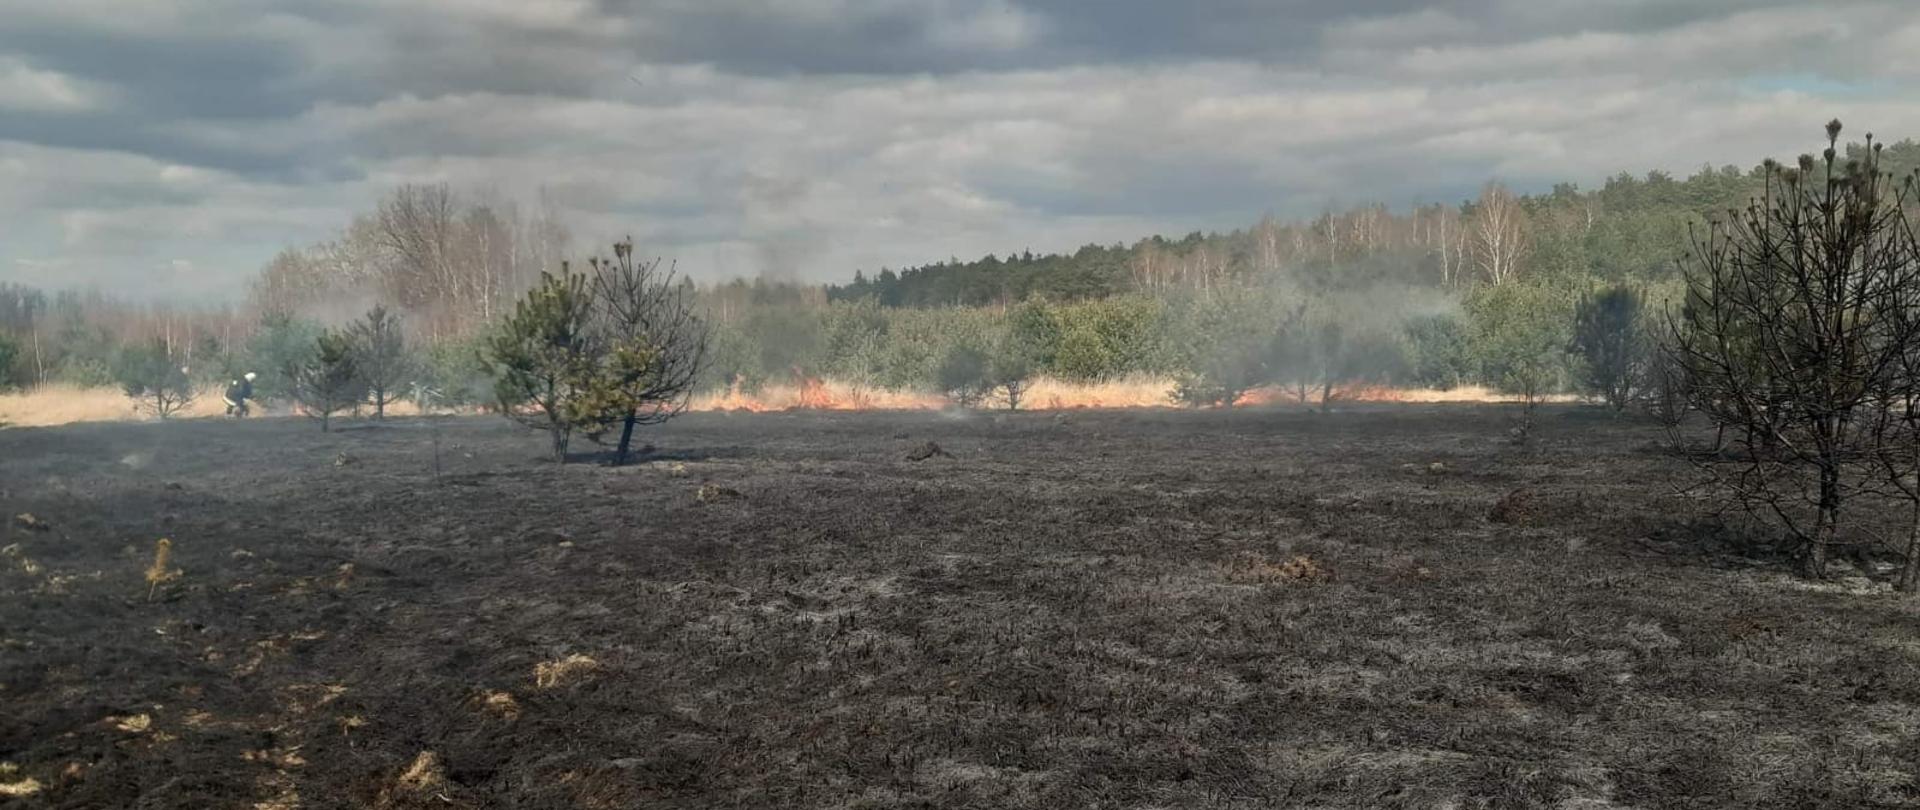 Na pierwszym planie widać połacie wypalonej trawy na nieużytkach. W tle widnieje las, z którego unosi się dym. Na zdjęciu widać także ogień, z którym strażacy w umundurowaniu specjalnym walczą przy użyciu tłumic.